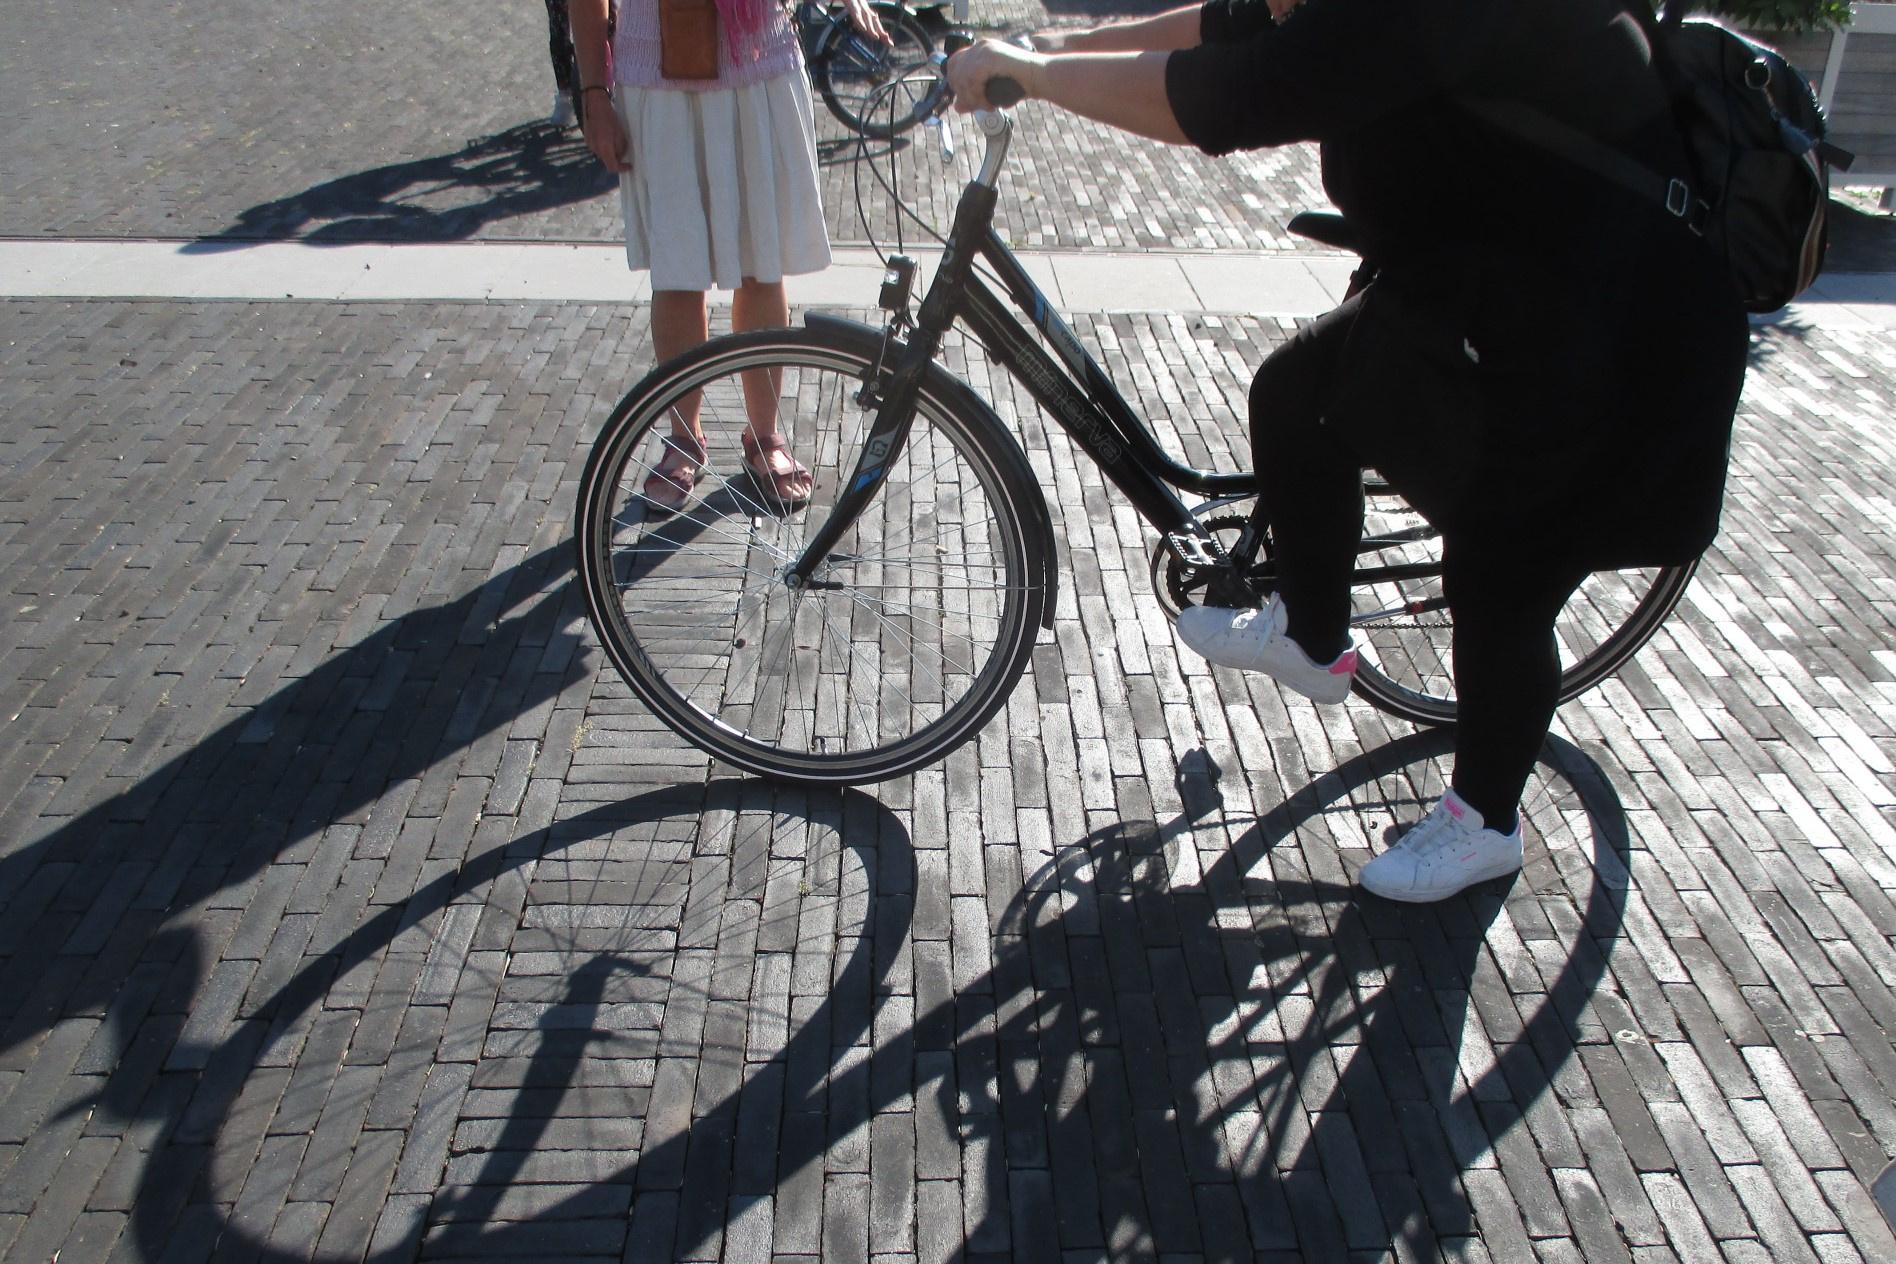 L'exercice de faire de la trottinette avec le vélo, puis de l'enjamber, semble difficile pour plus d'une participante.